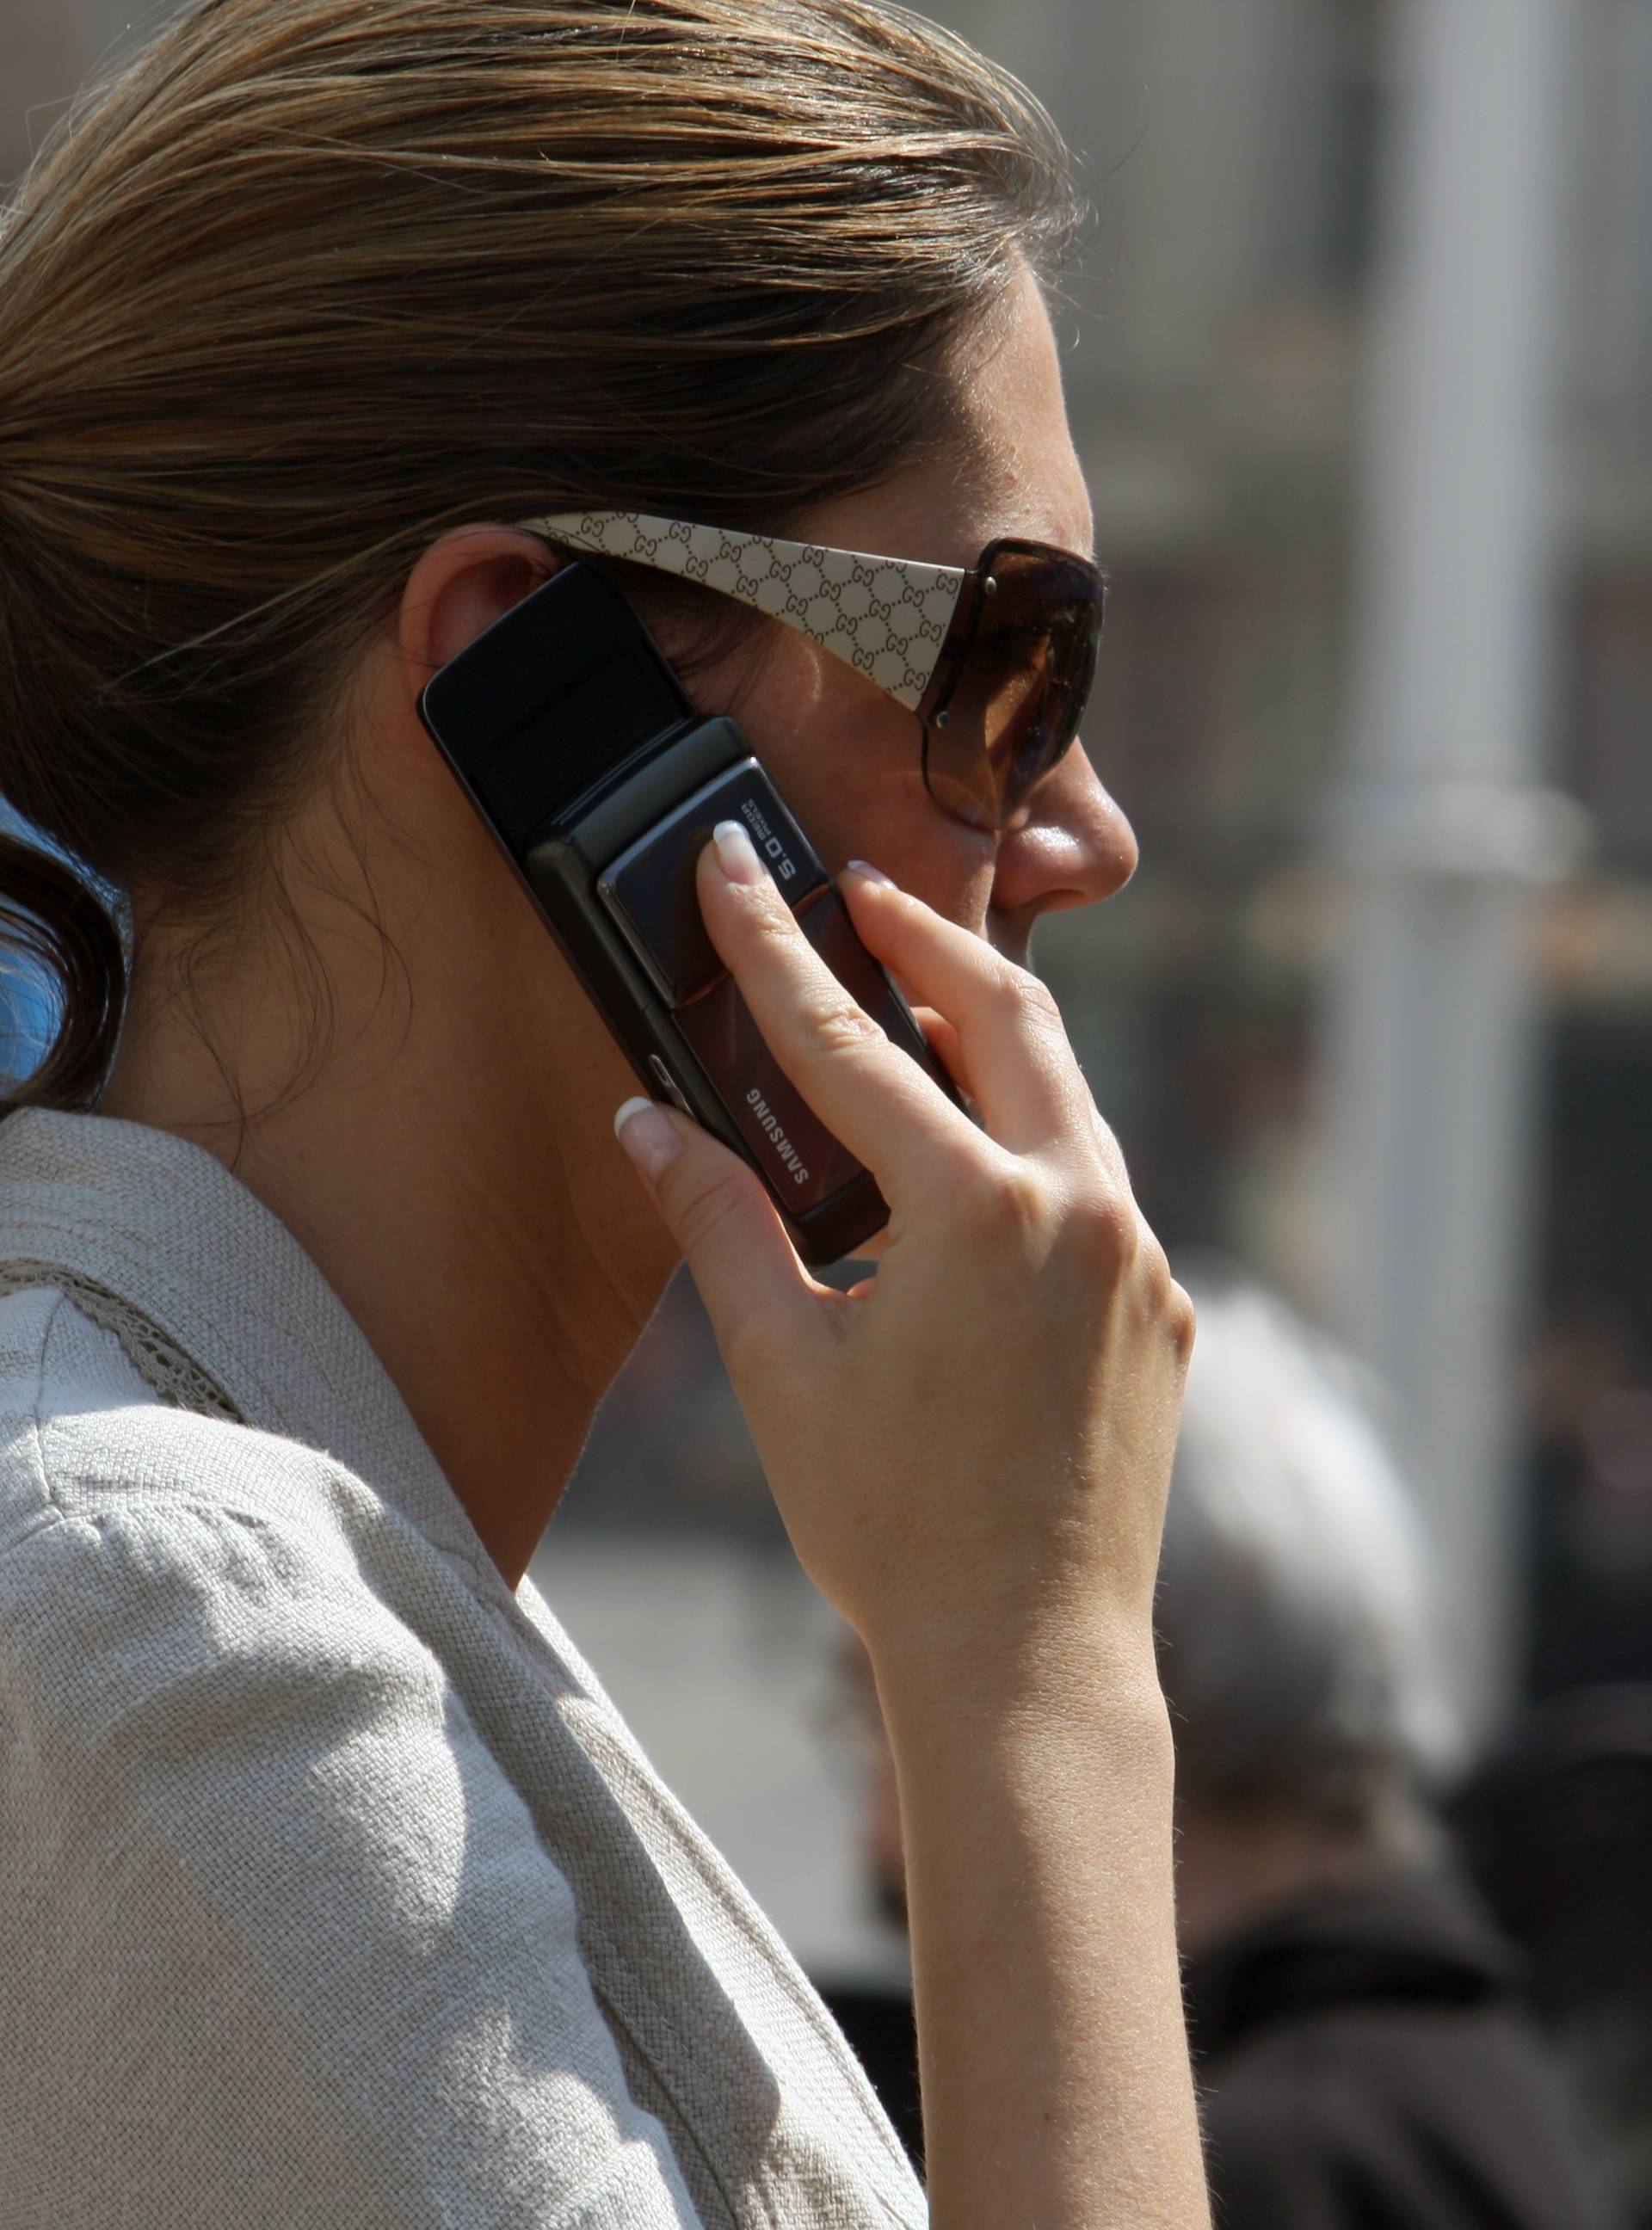 Telekomi ne planiraju dizati cijene zbog ukidanja roaminga